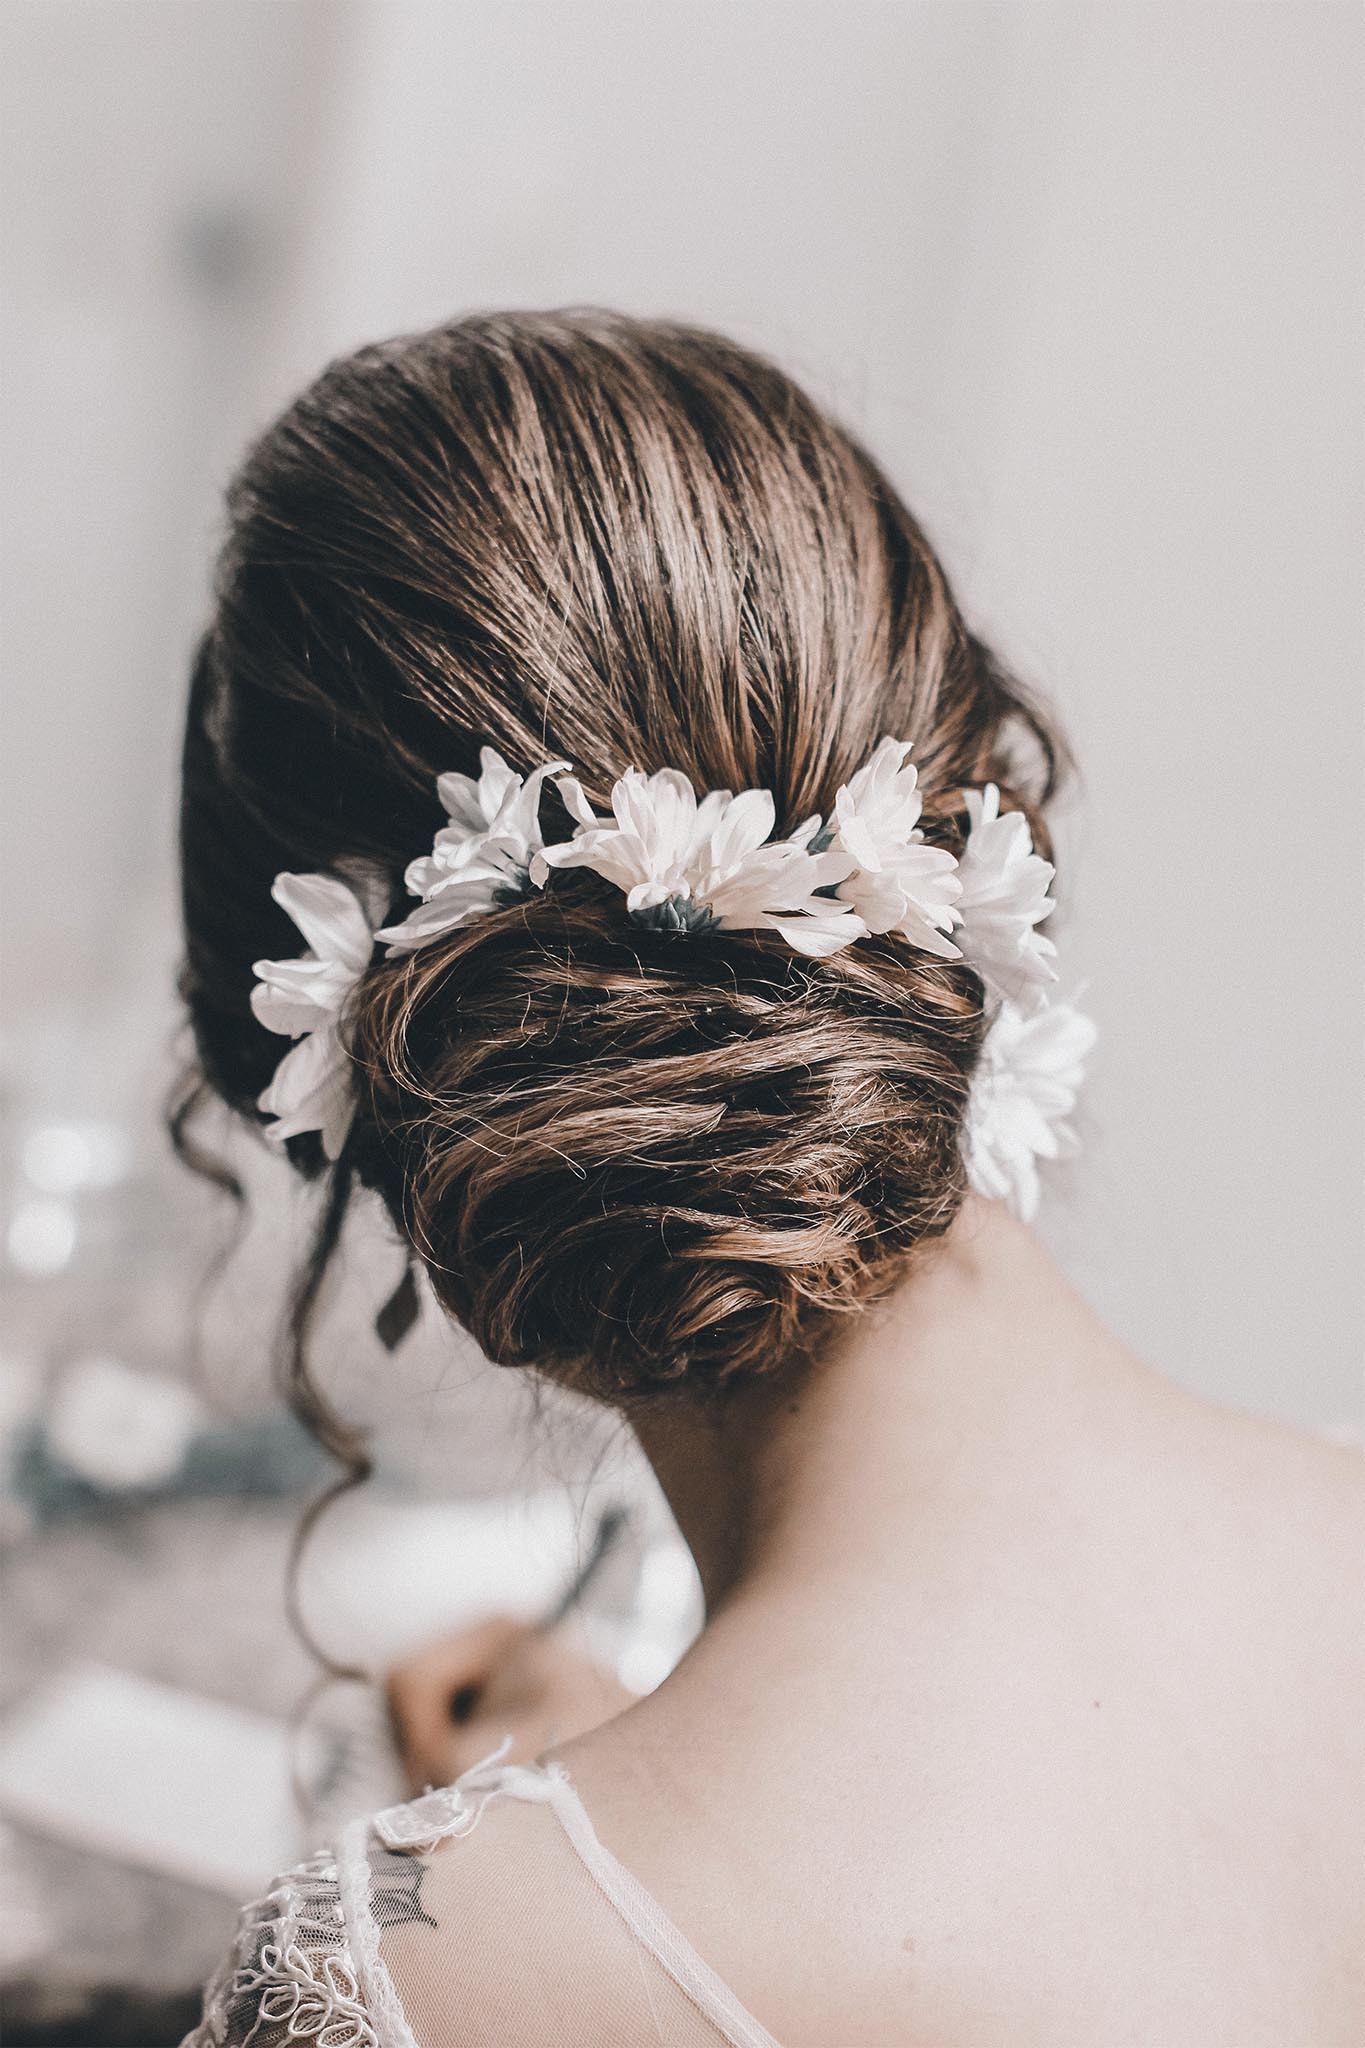 mujer de espaldas vestida de novia con chignon hecho con mechones cruzados y flores, peinados para casamiento